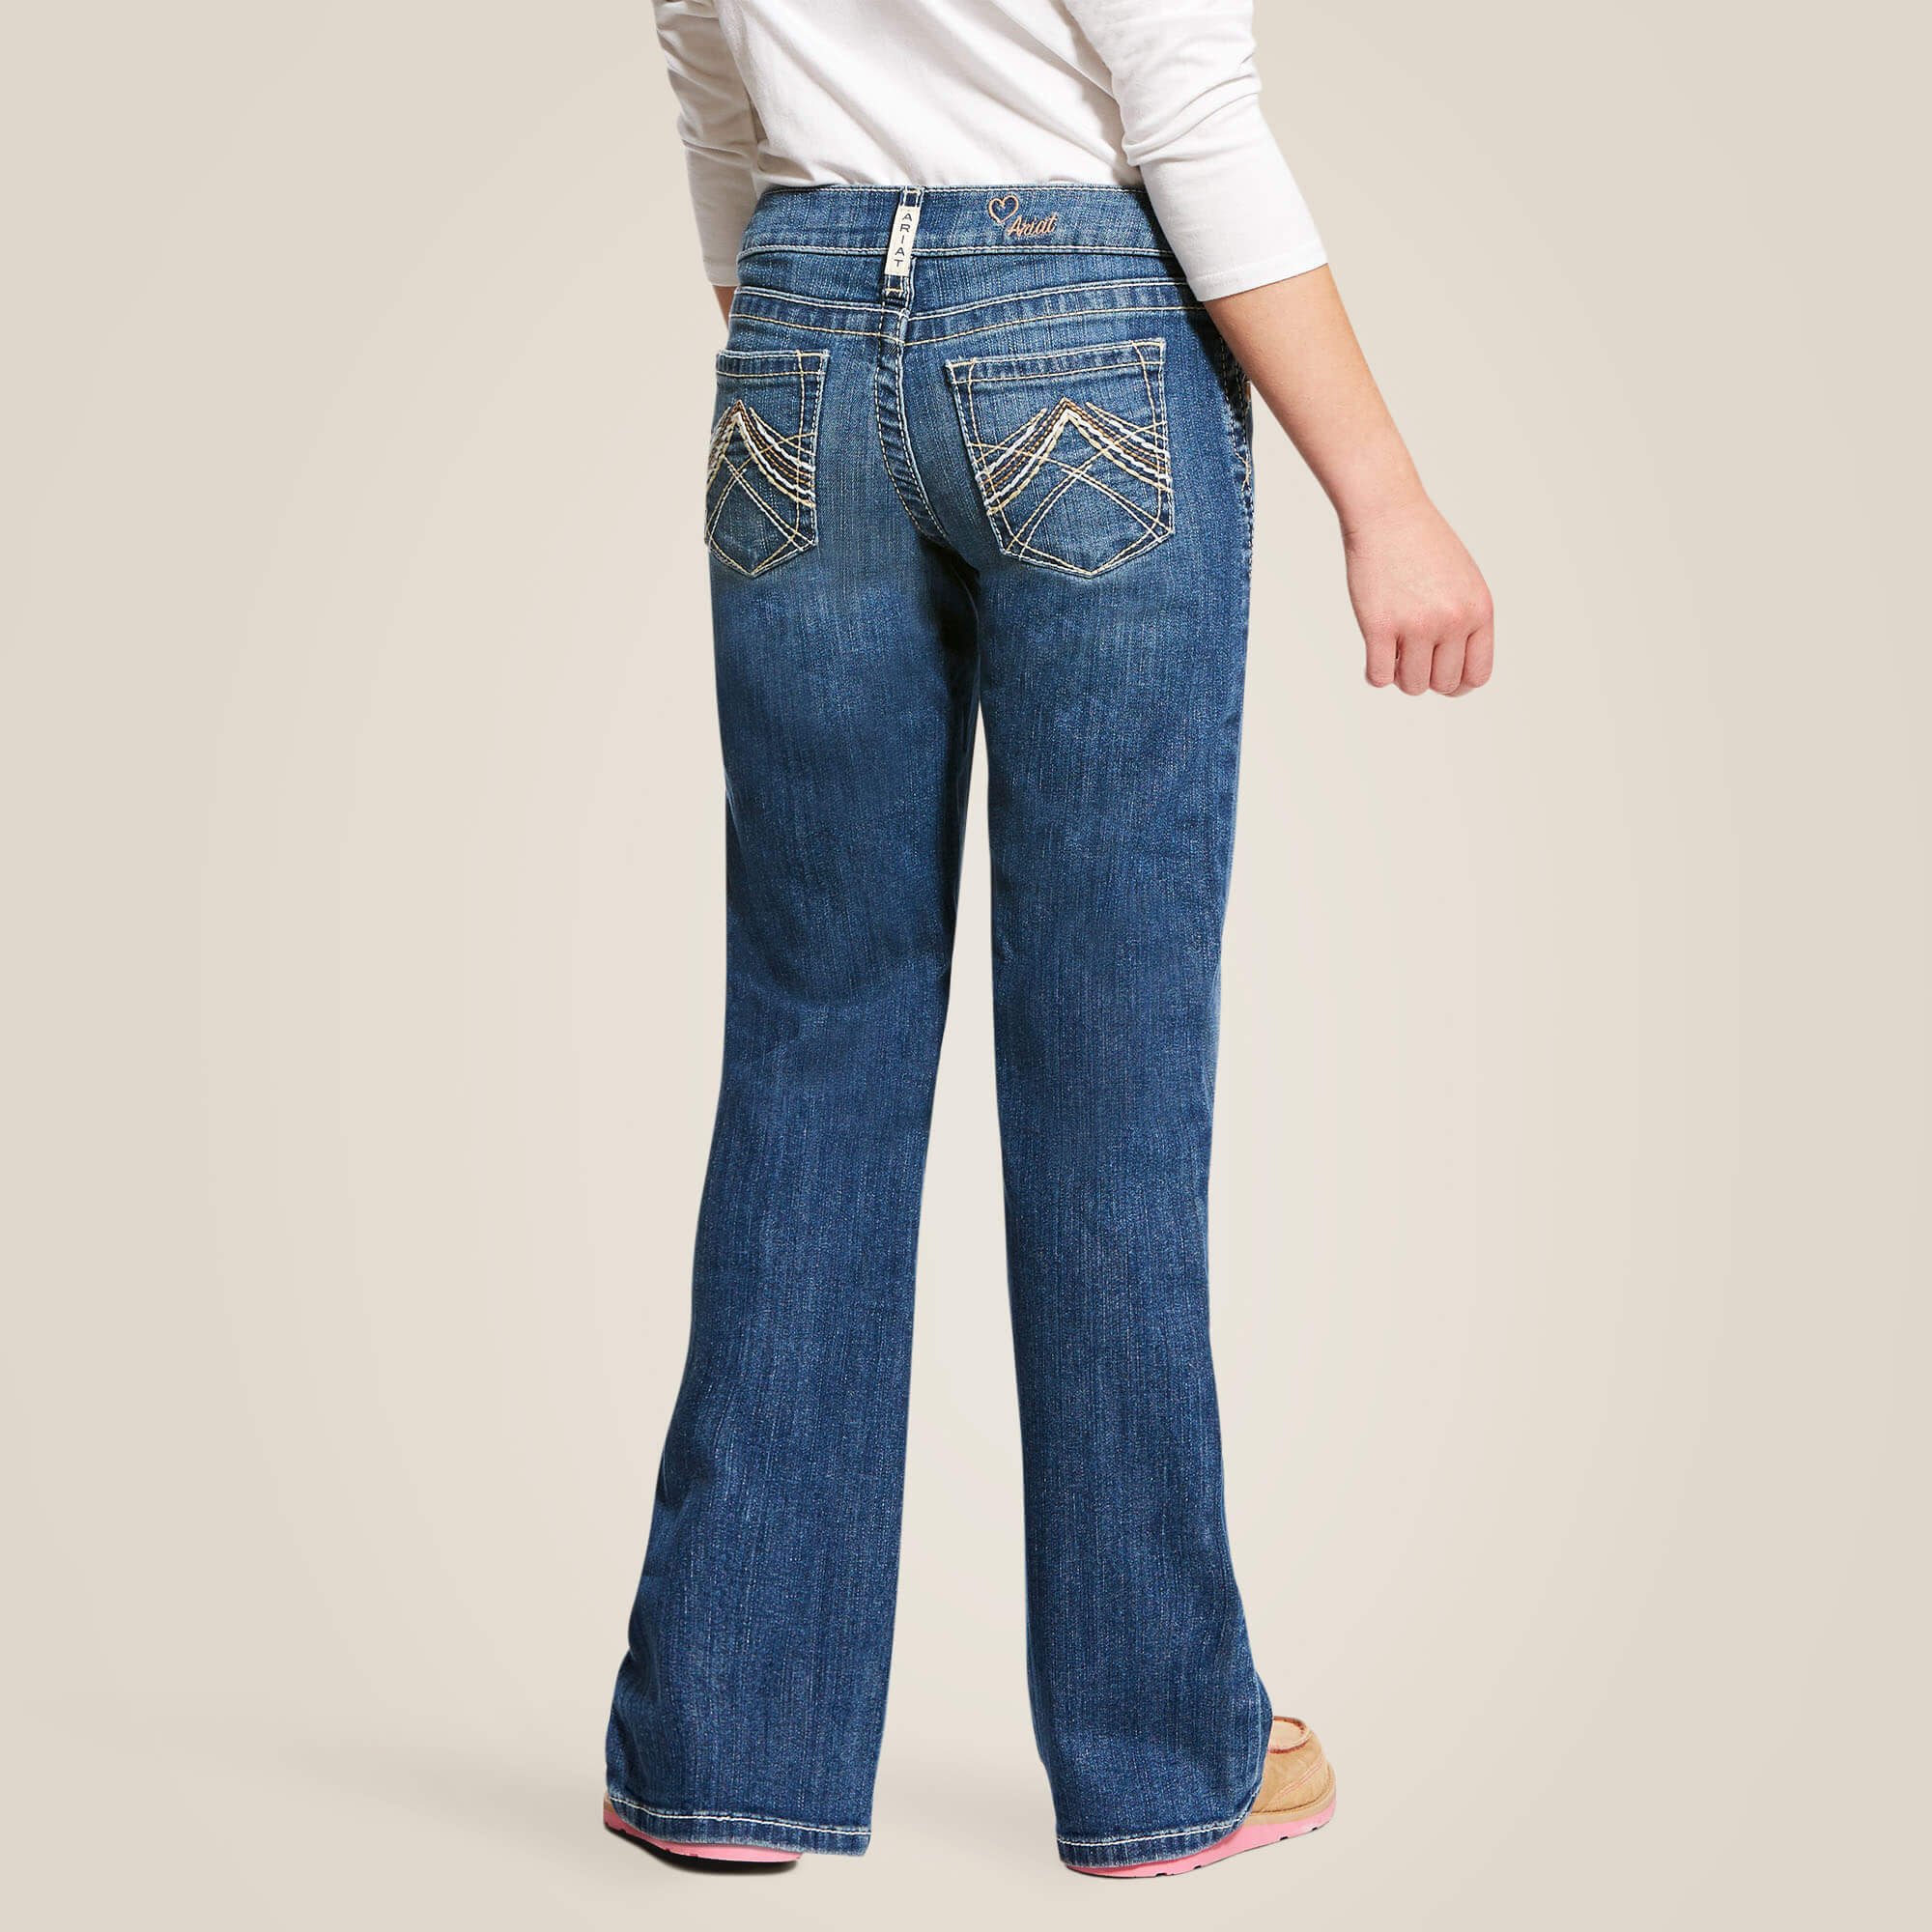 Ariat® Ladies R.E.A.L. Perfect Rise Stretch Rosa Boot Cut Jean